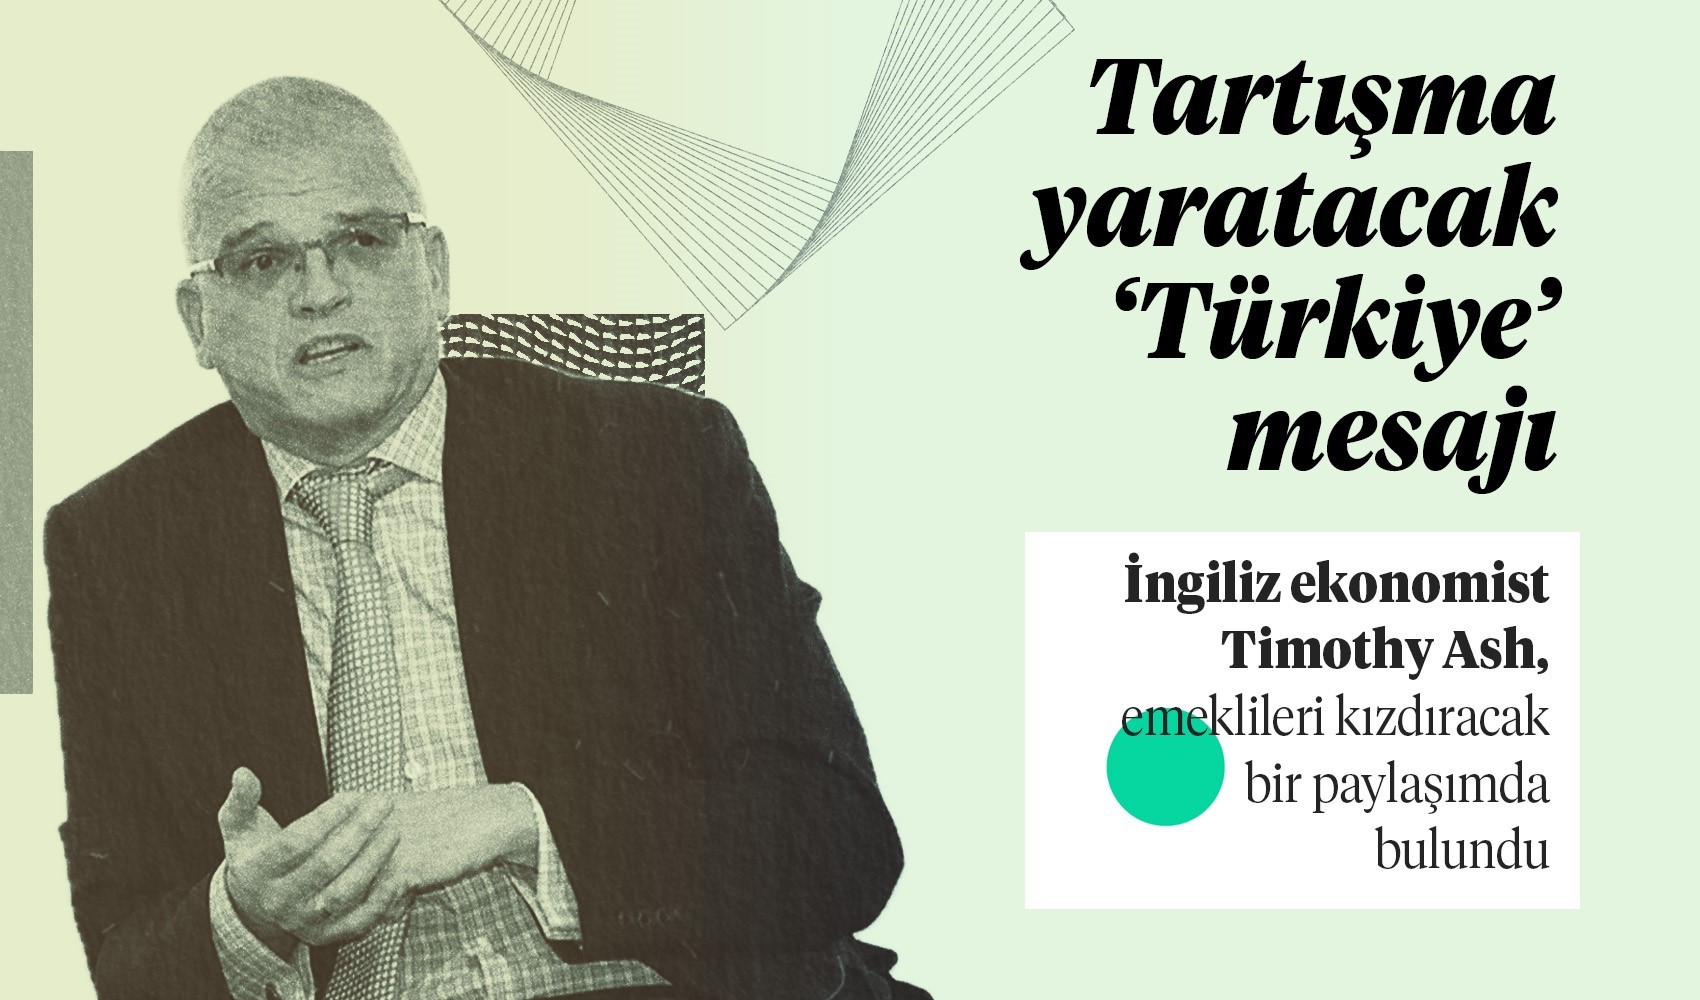 İngiliz ekonomistten çarpıcı 'Türkiye' mesajı: Emekli maaşlarını işaret etti